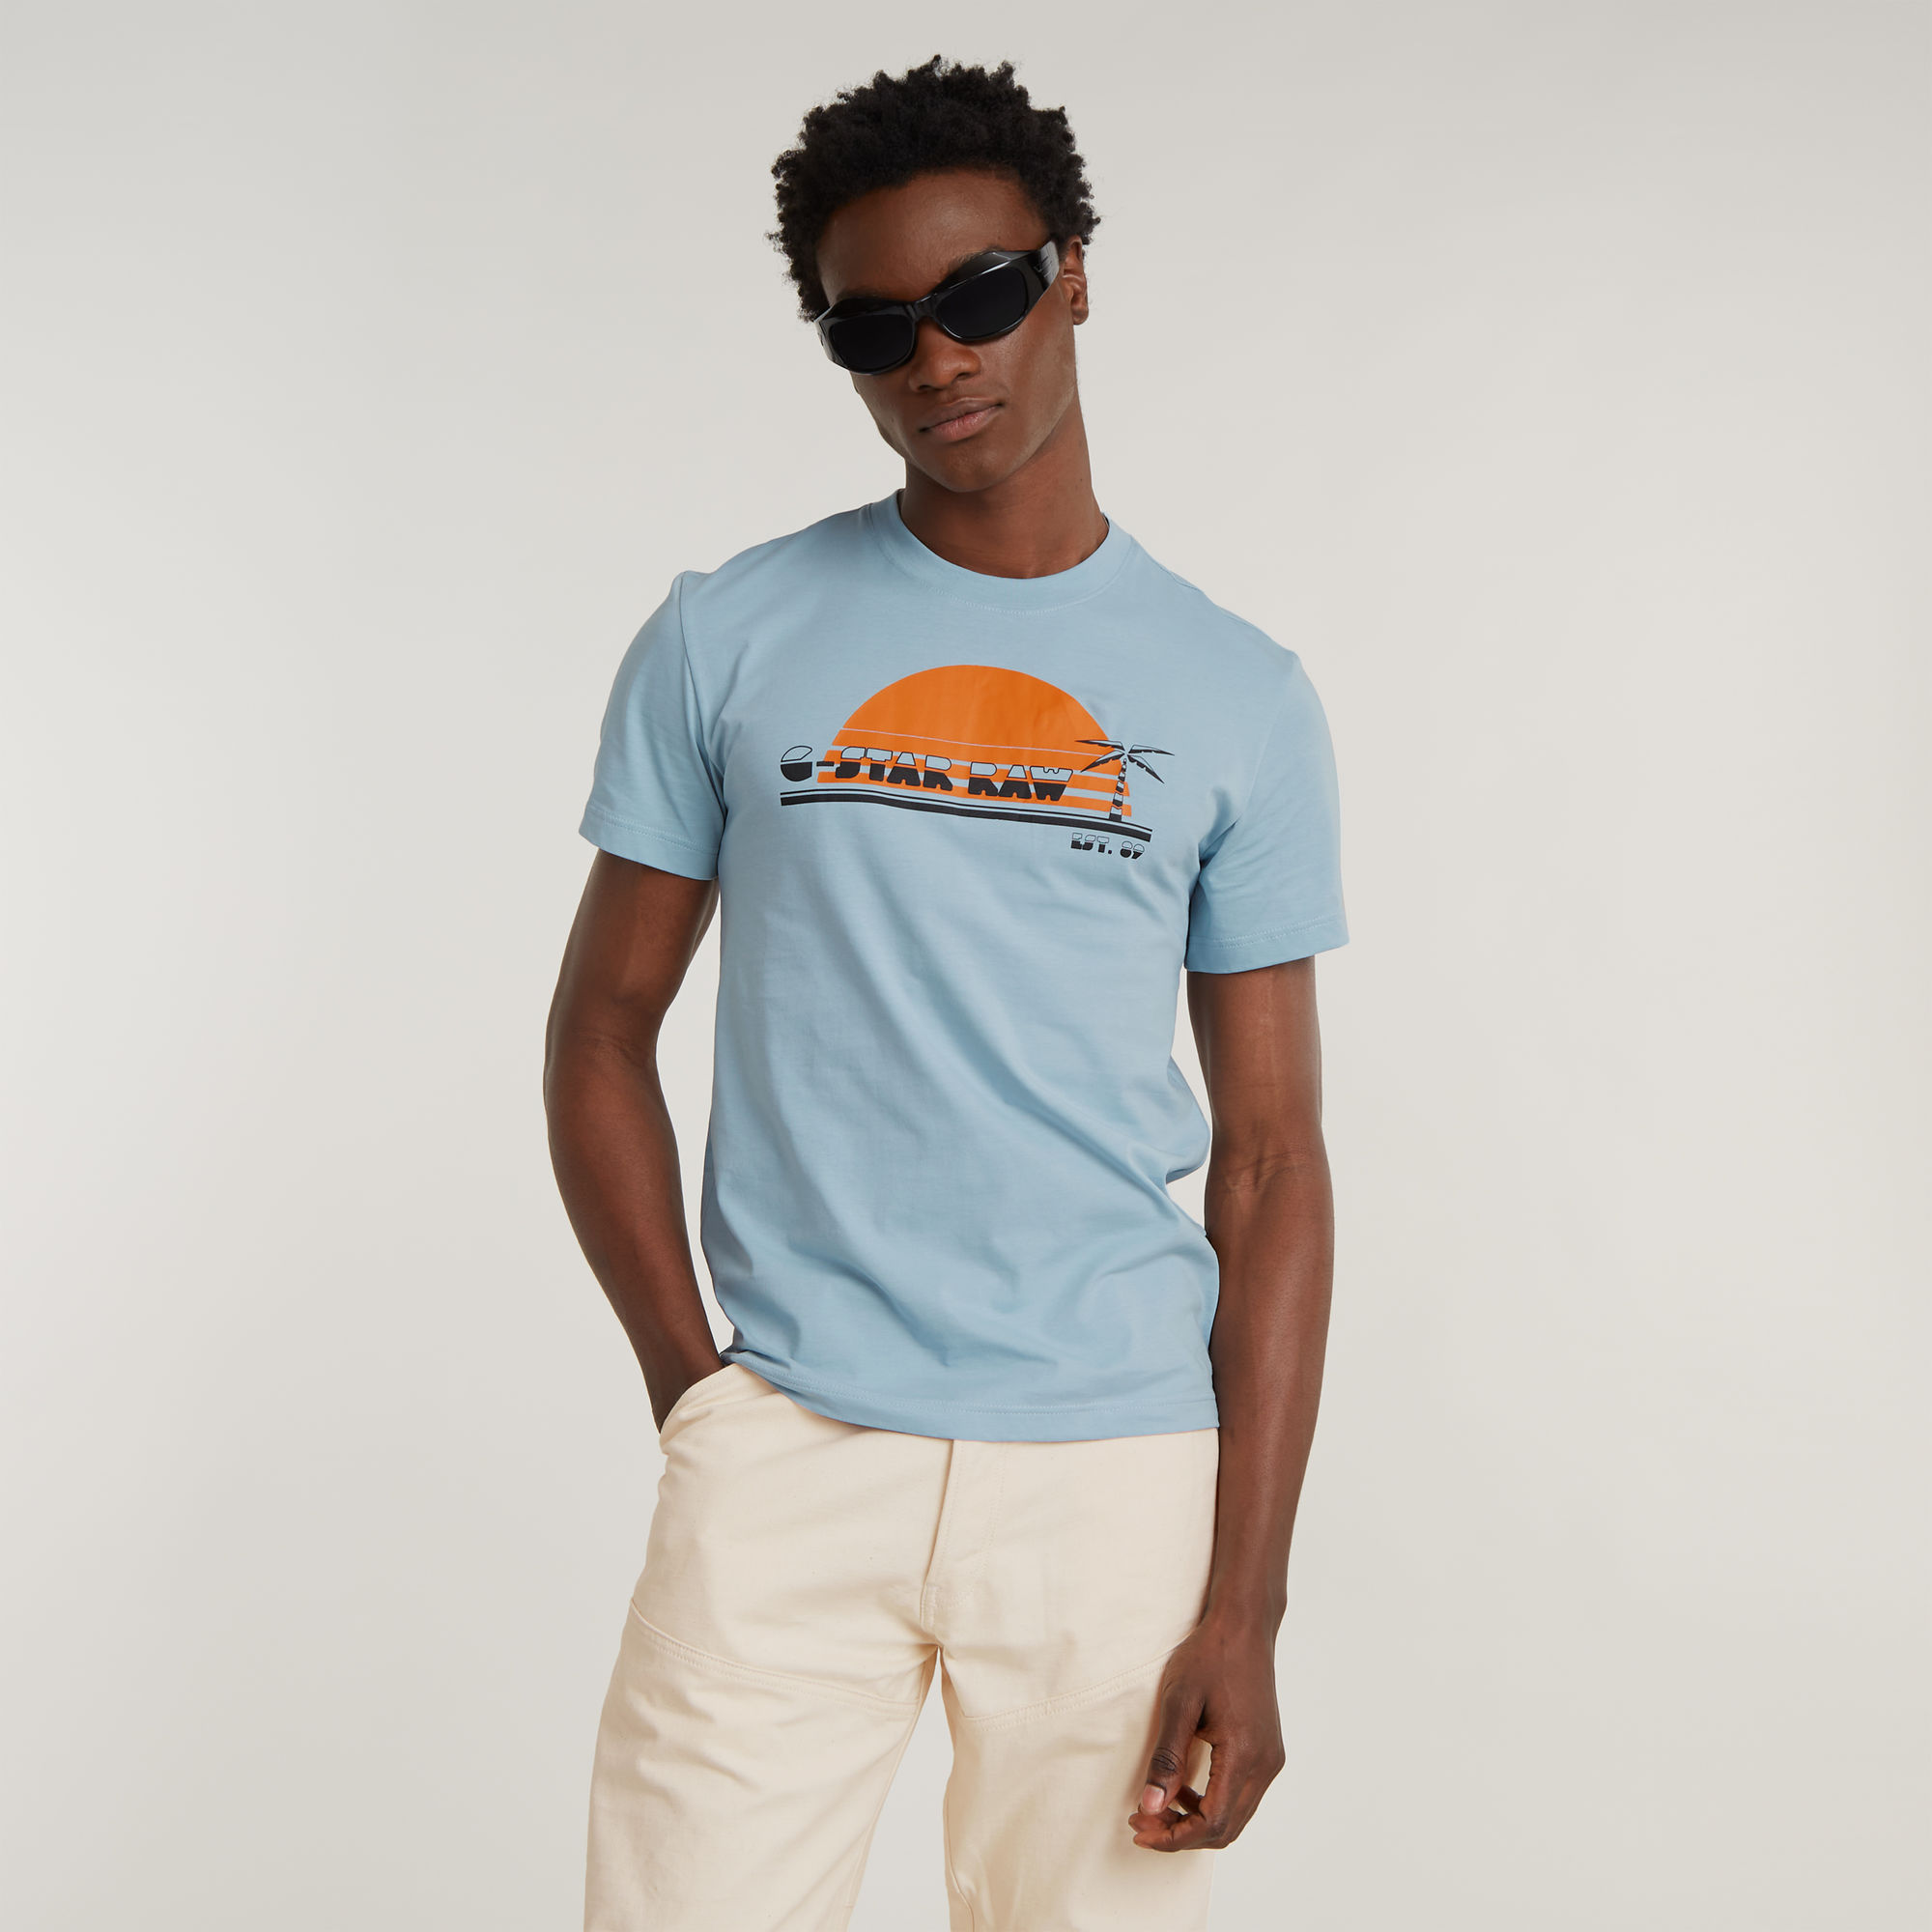 

Sunrise Slim T-Shirt - Light blue - Men